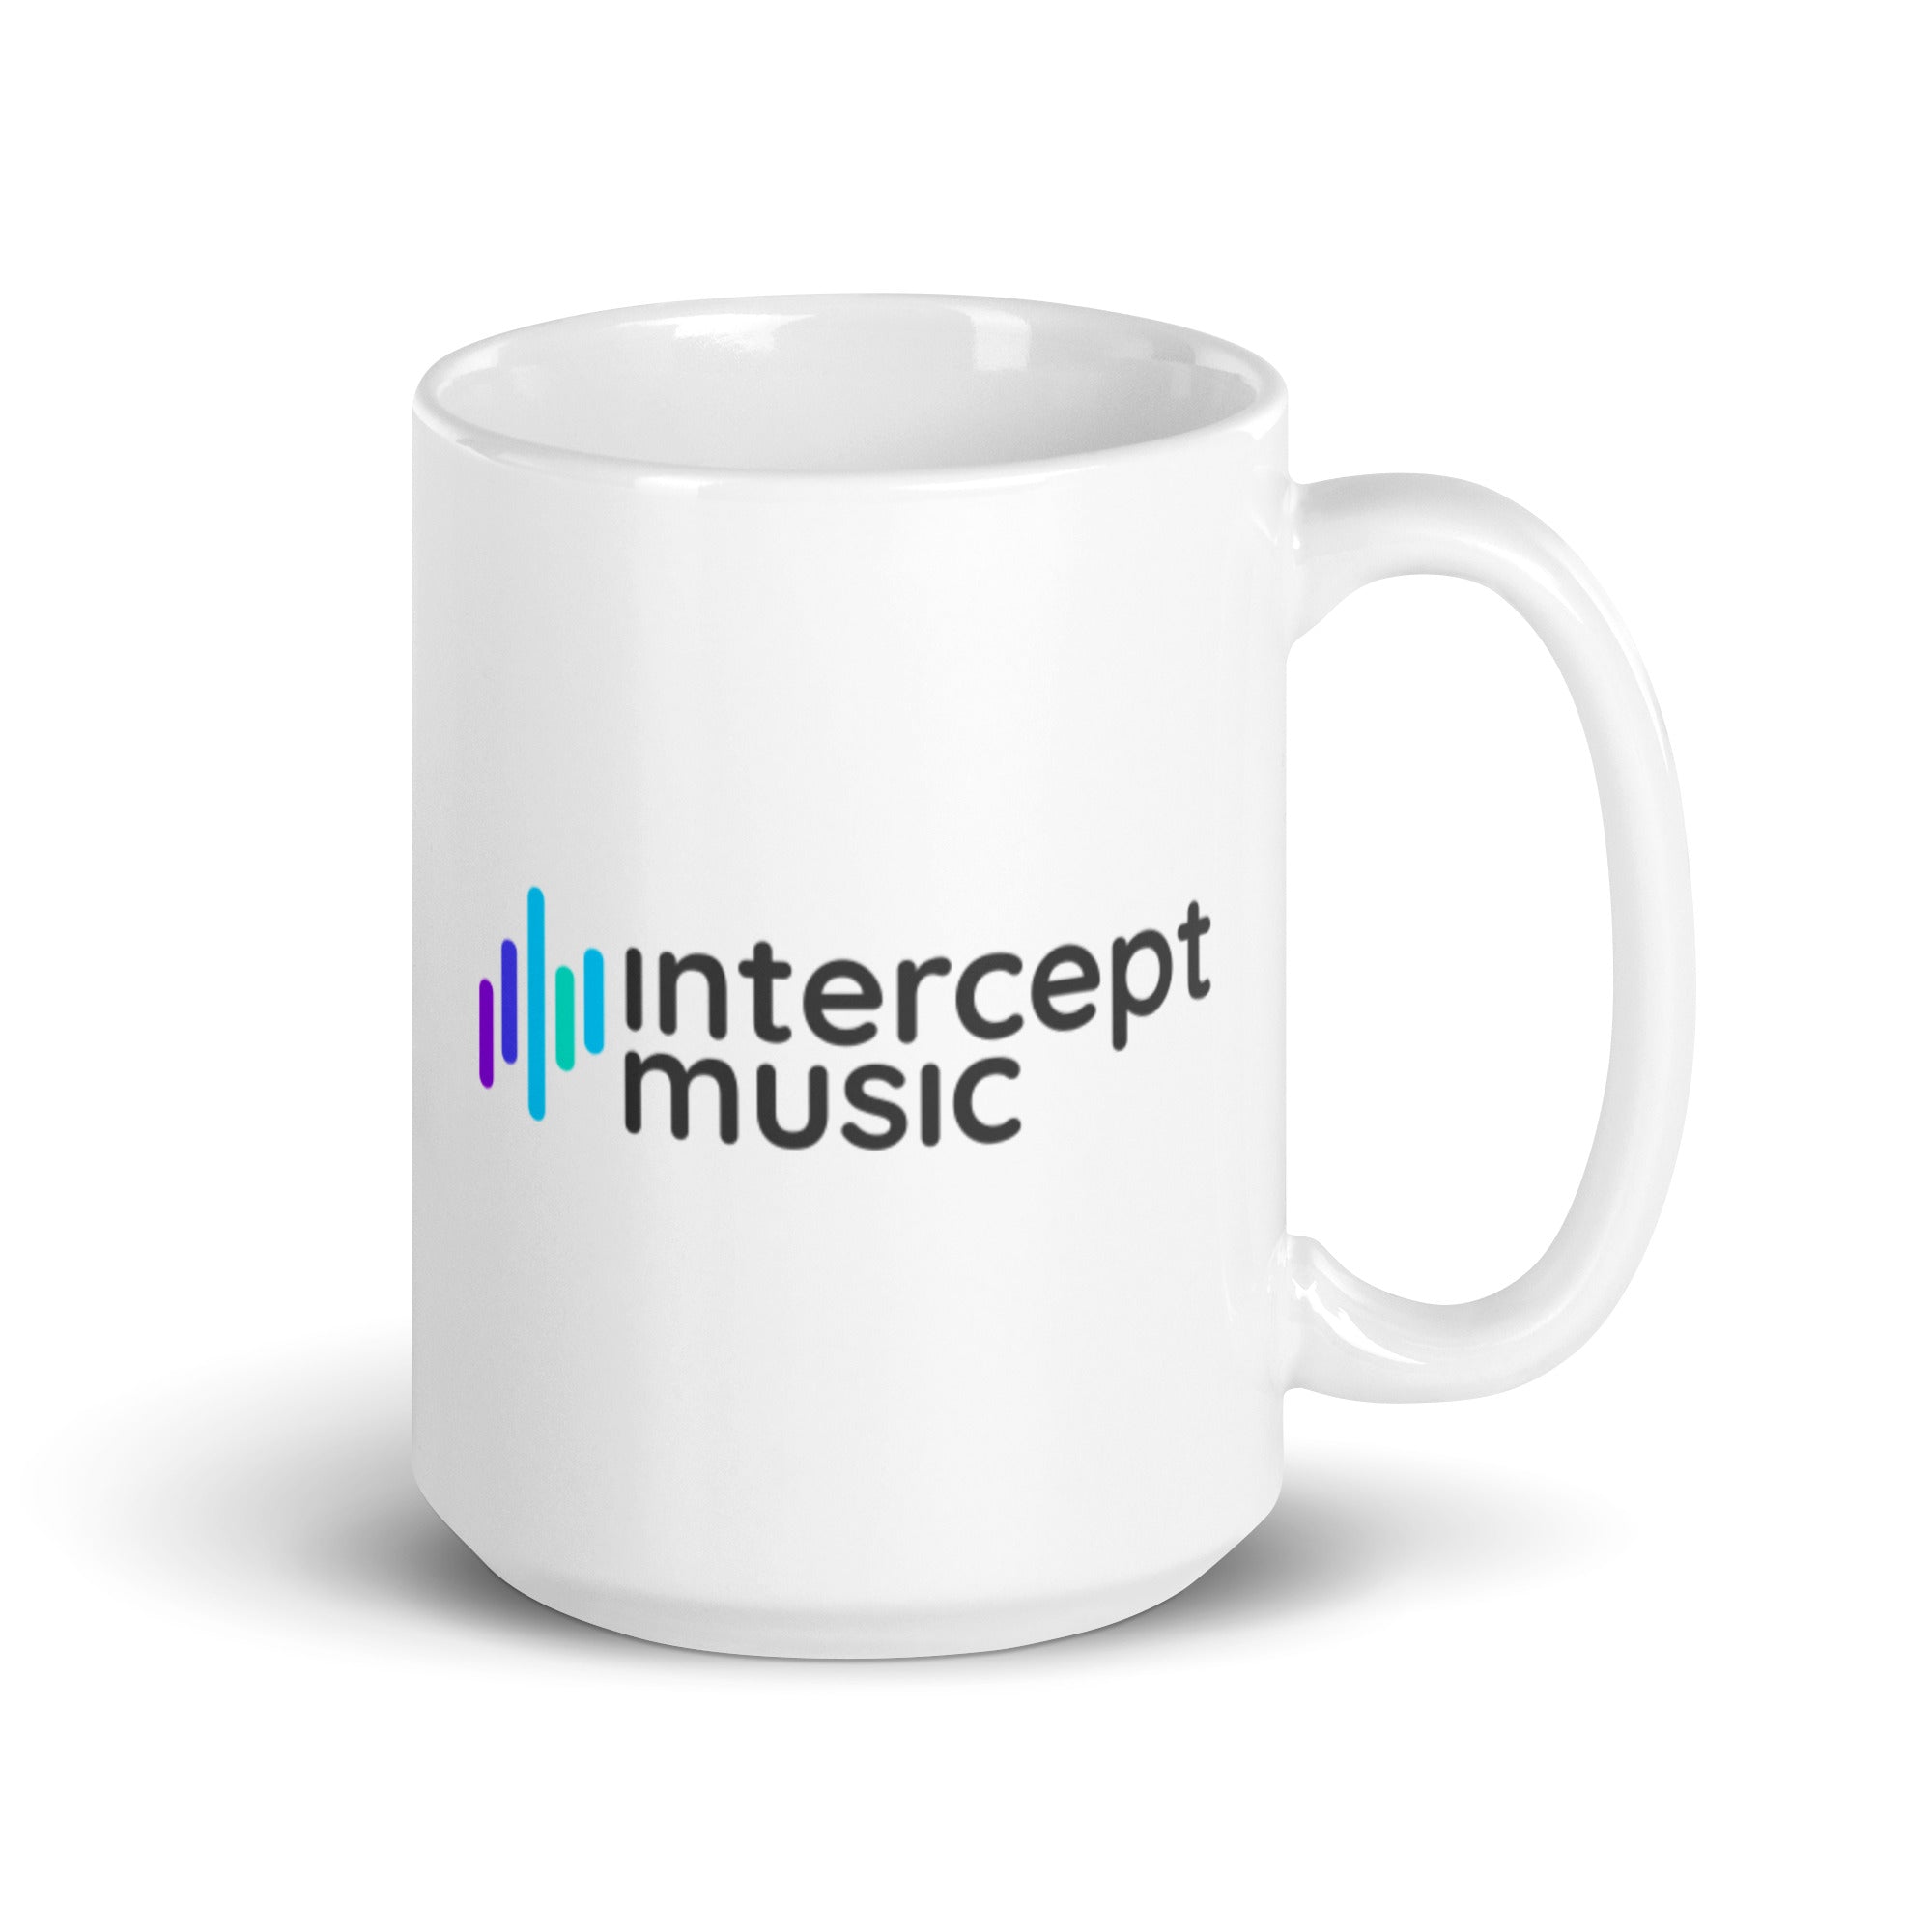 Intercept Music - White glossy mug